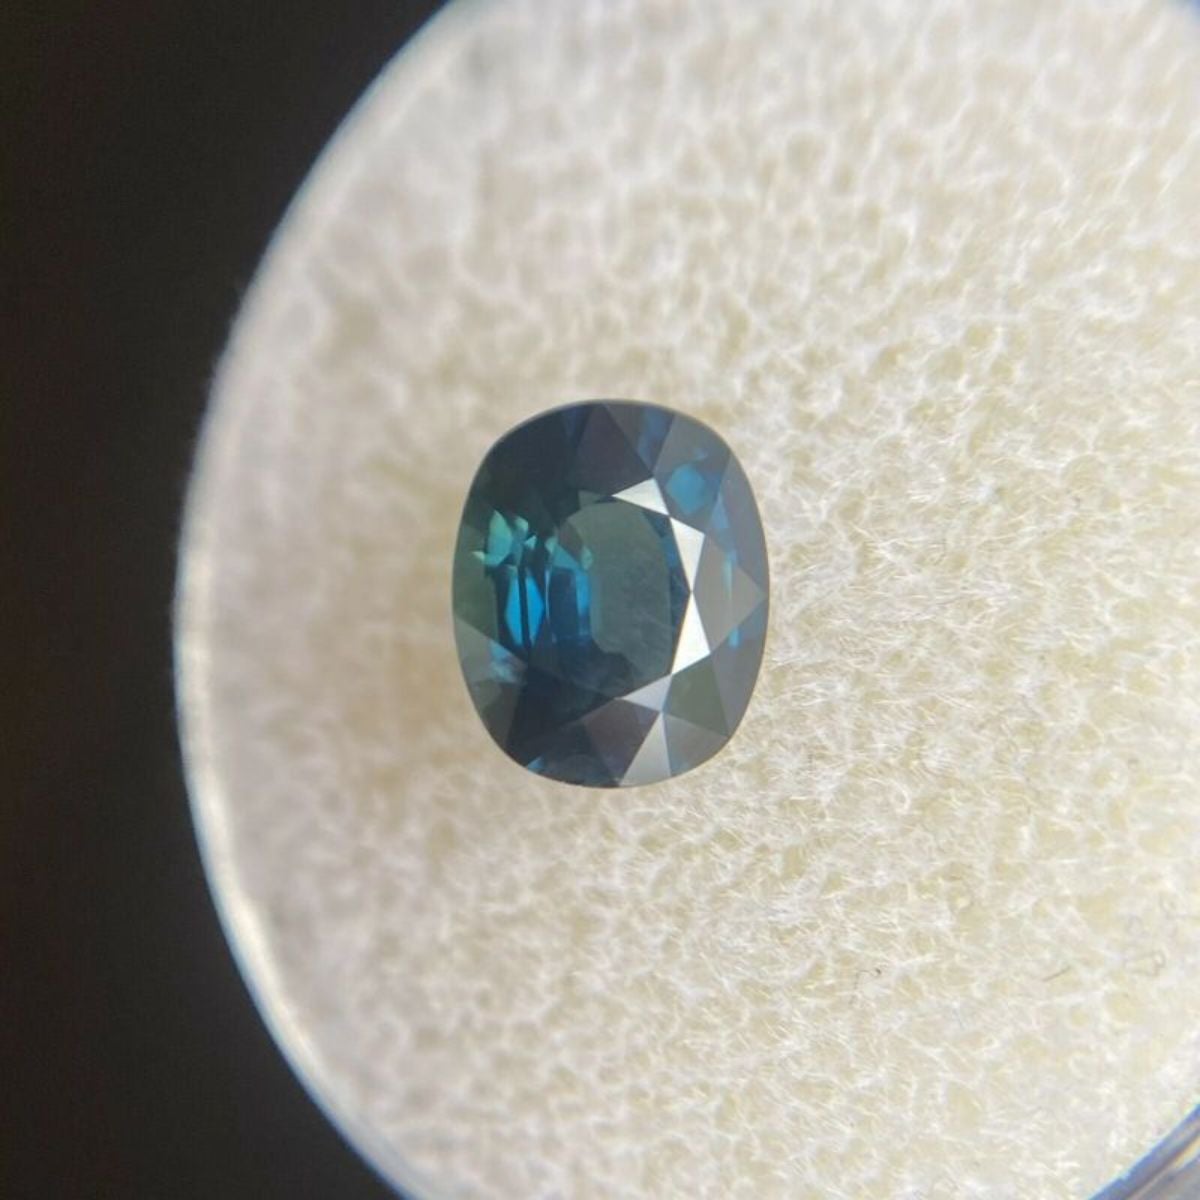 Fine Deep Teal Blue Sapphire 1.55ct Cushion Cut Rare Natural Gem